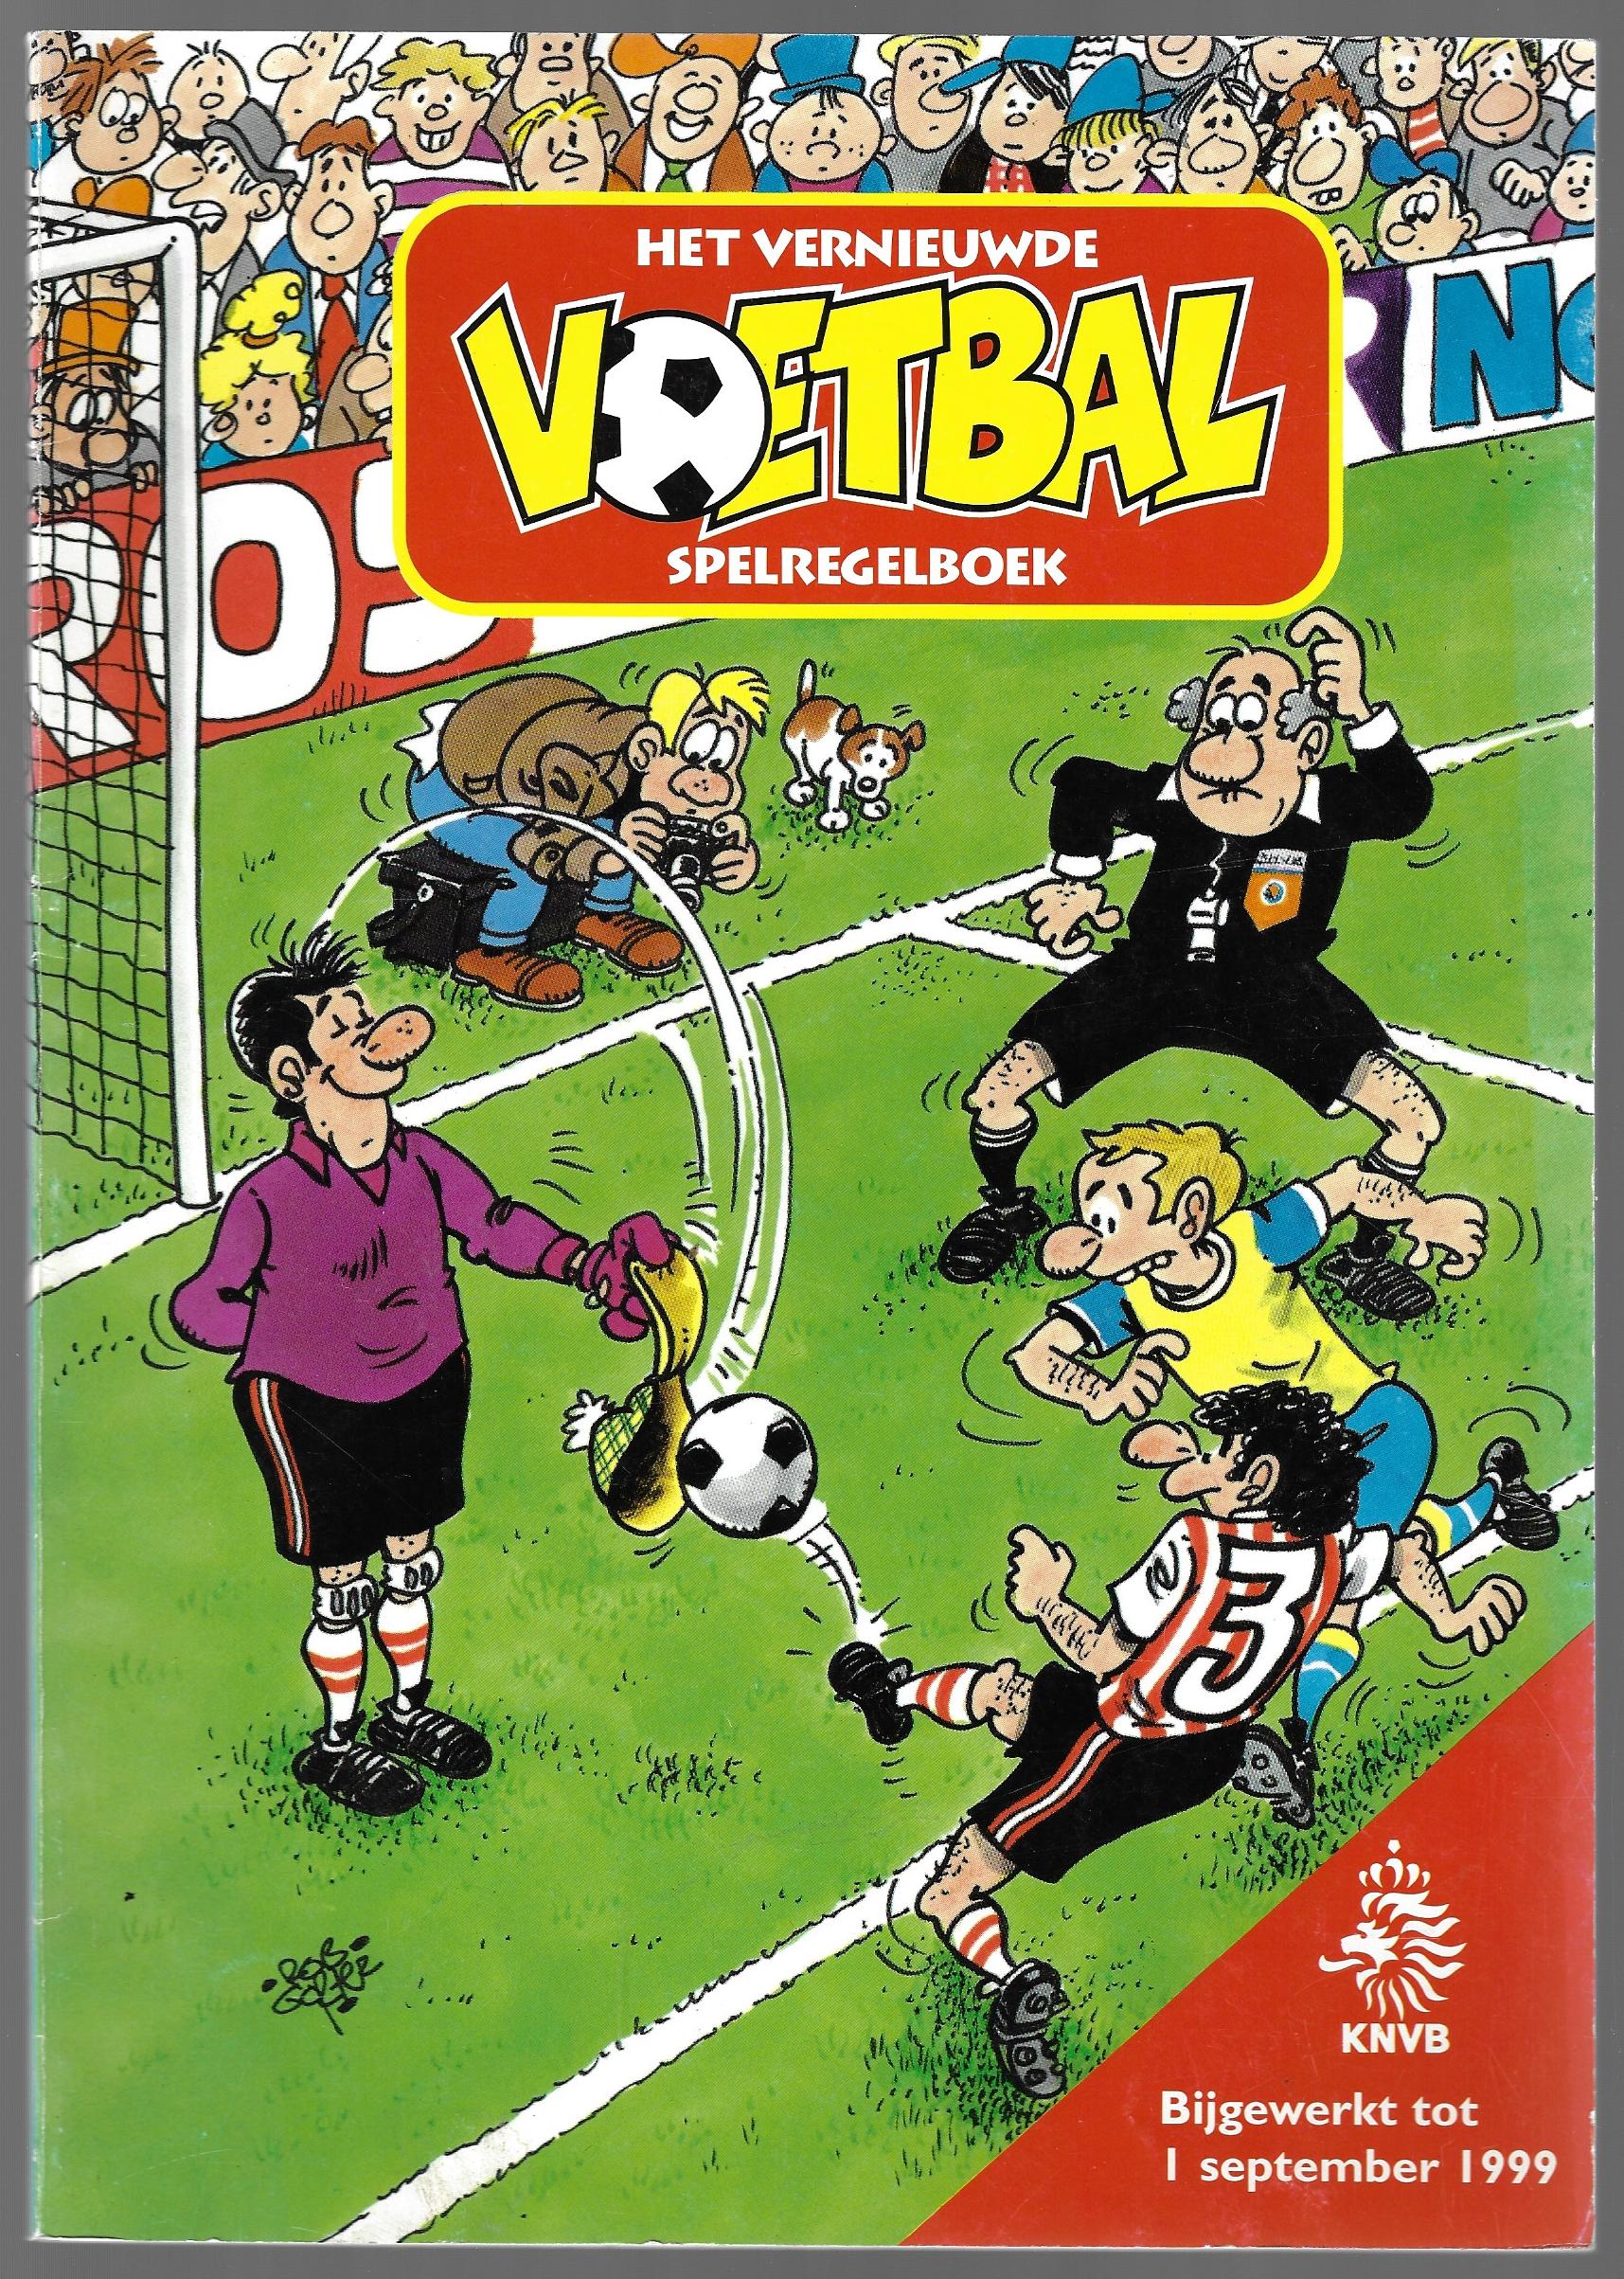 Lingen, Bert van - Het vernieuwde voetbal spelregelboek